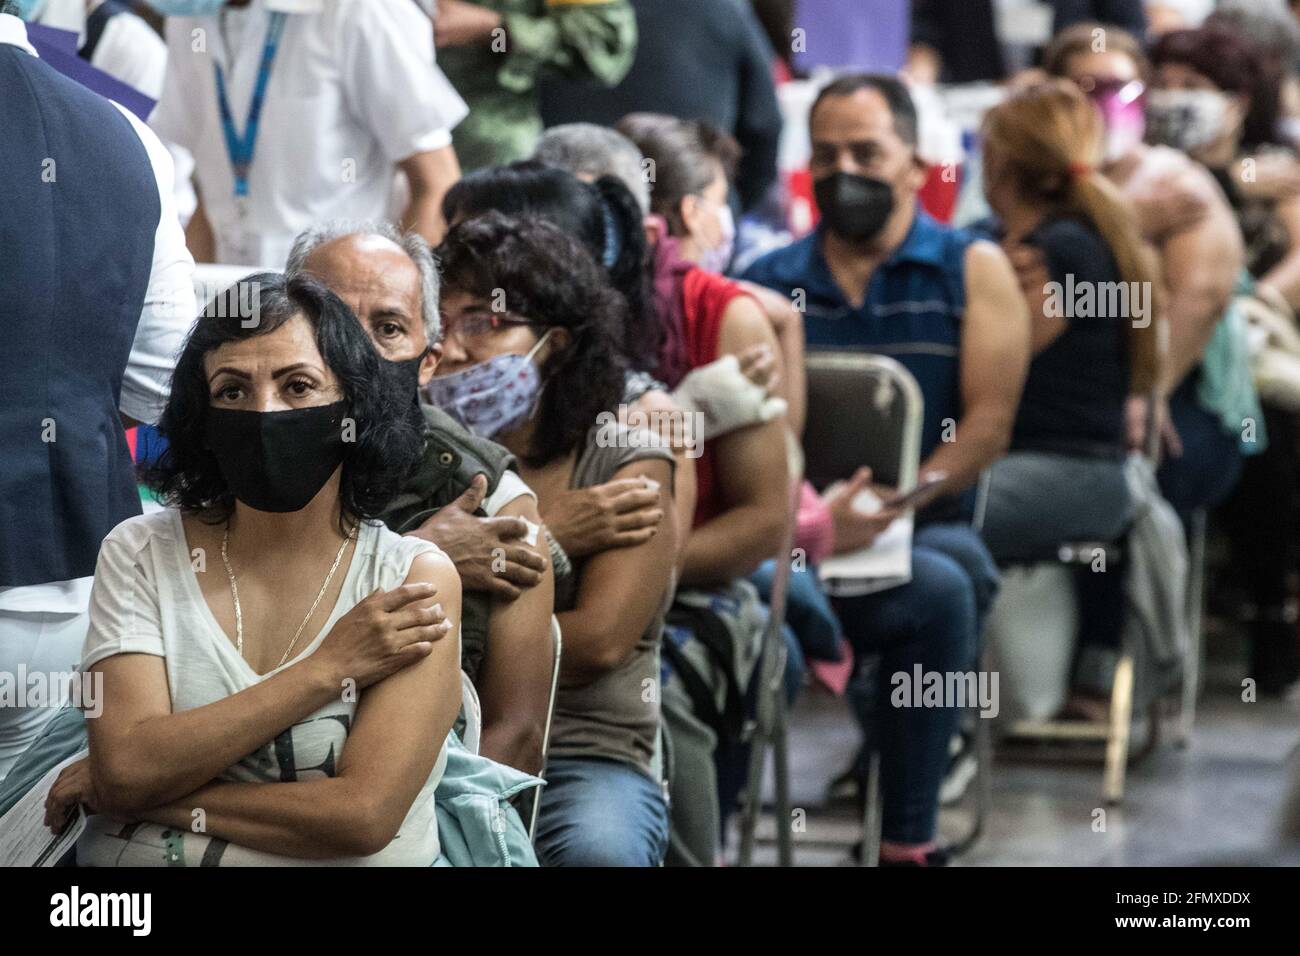 CIUDAD DE MÉXICO, MÉXICO 11 DE MAYO: Personas durante la vacunación masiva del programa nacional de vacunas para personas de 50-59 años de edad para inmunizar contra Covid-19 el 11 de mayo de 2021 en Ciudad de México, México. (Foto de Eyepix/Sipa USA) Foto de stock